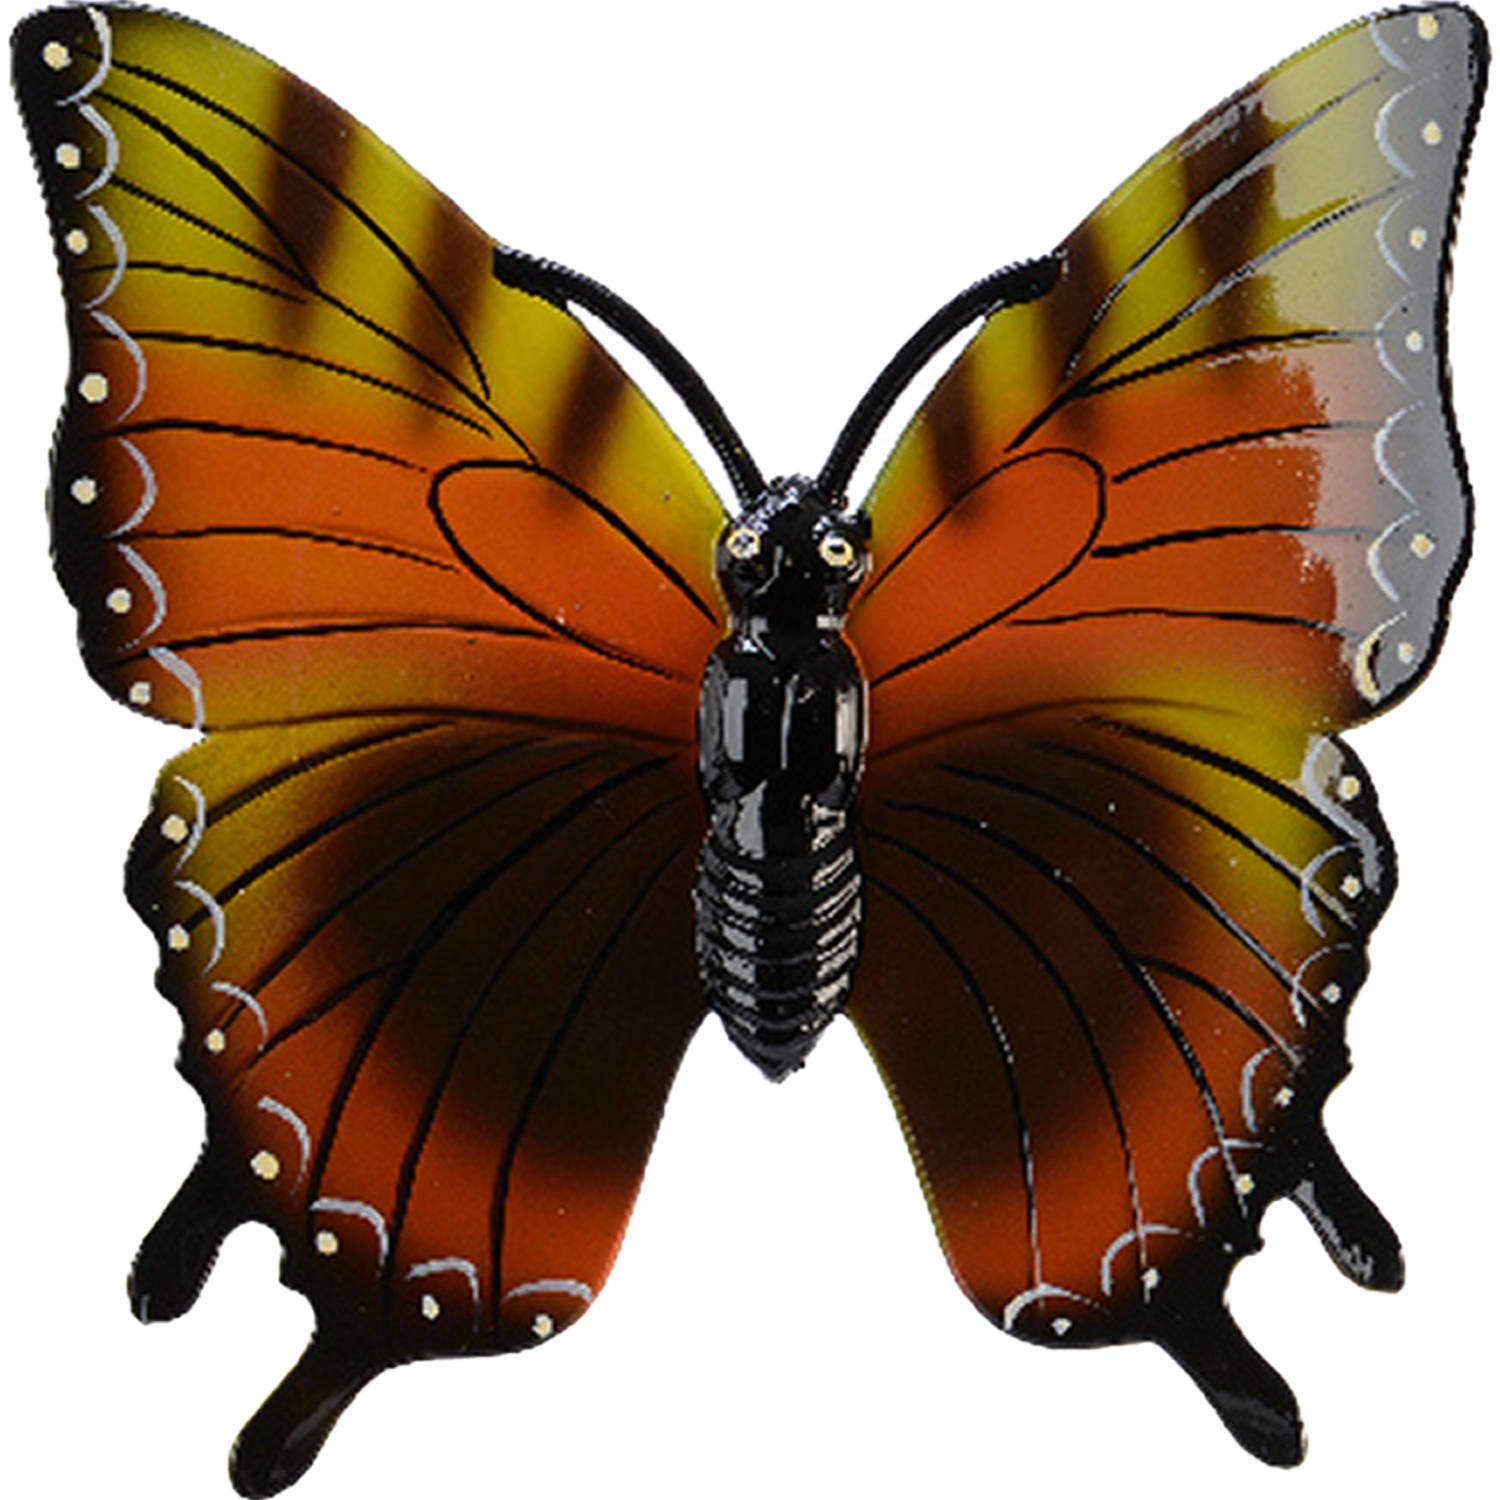 Tuin-schutting decoratie vlinder kunststof geeloranje 24 x 24 cm Tuinbeelden